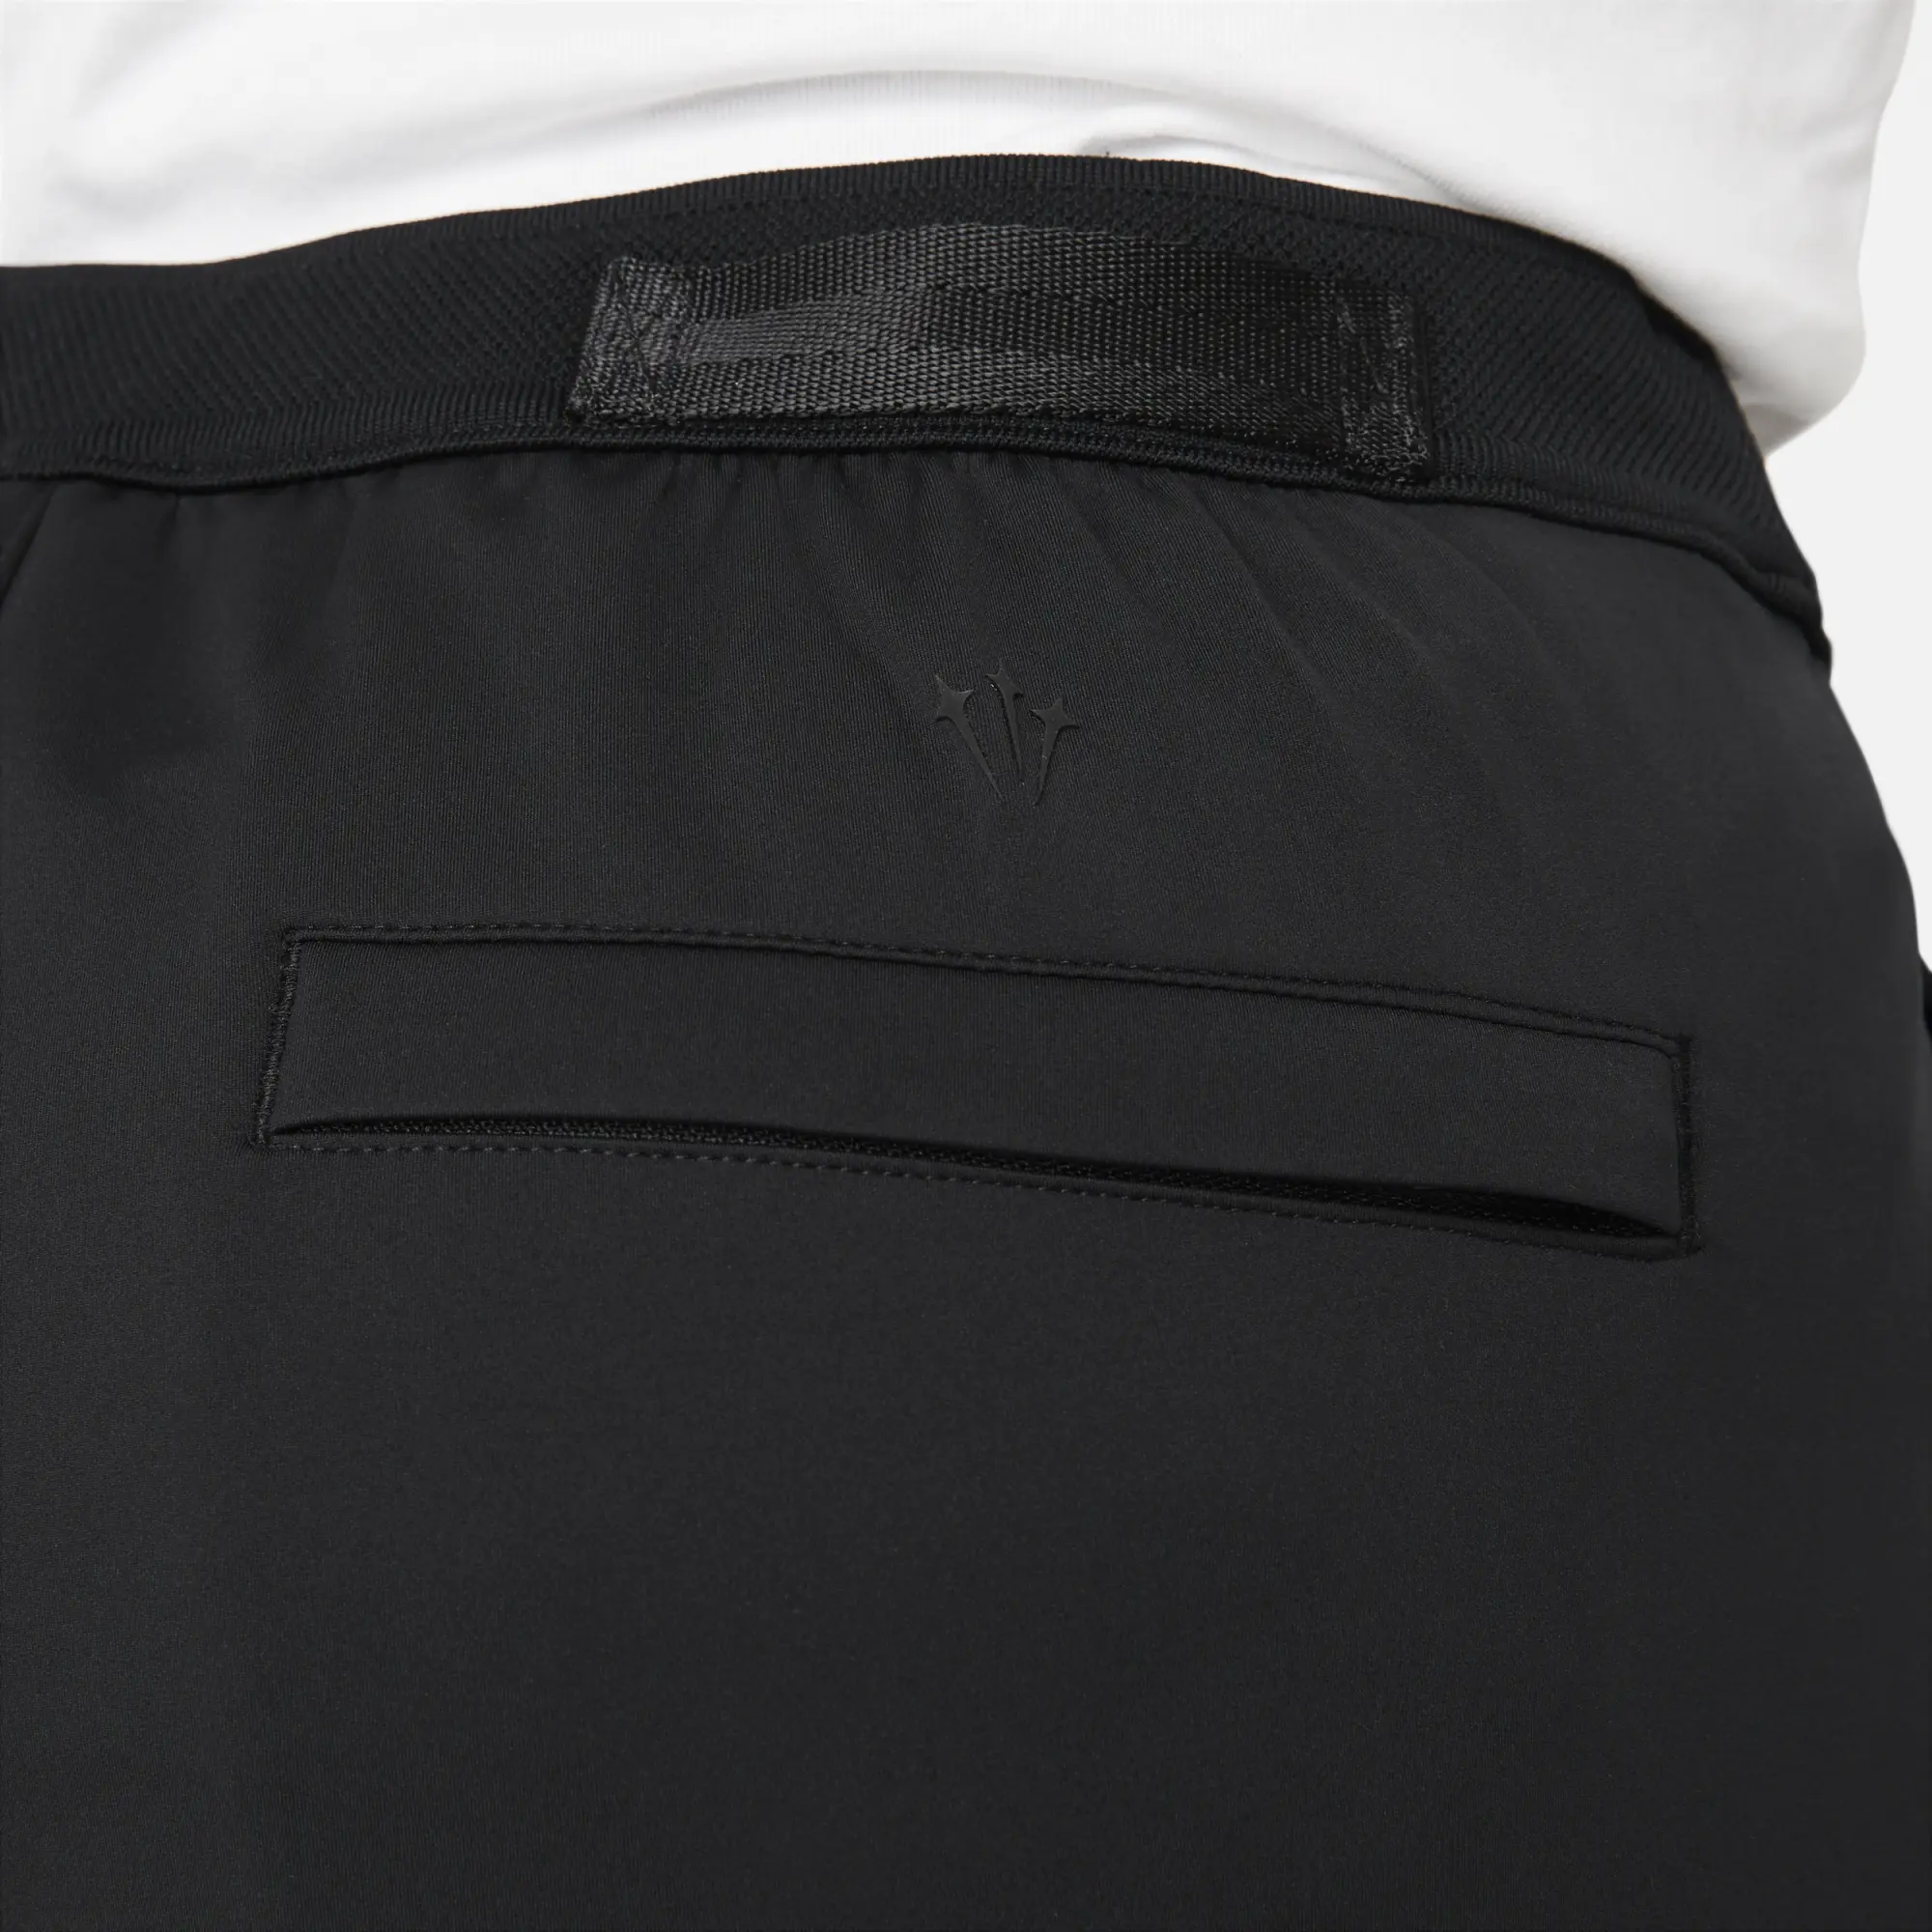 Nike Men's NRG Knit Pant Black